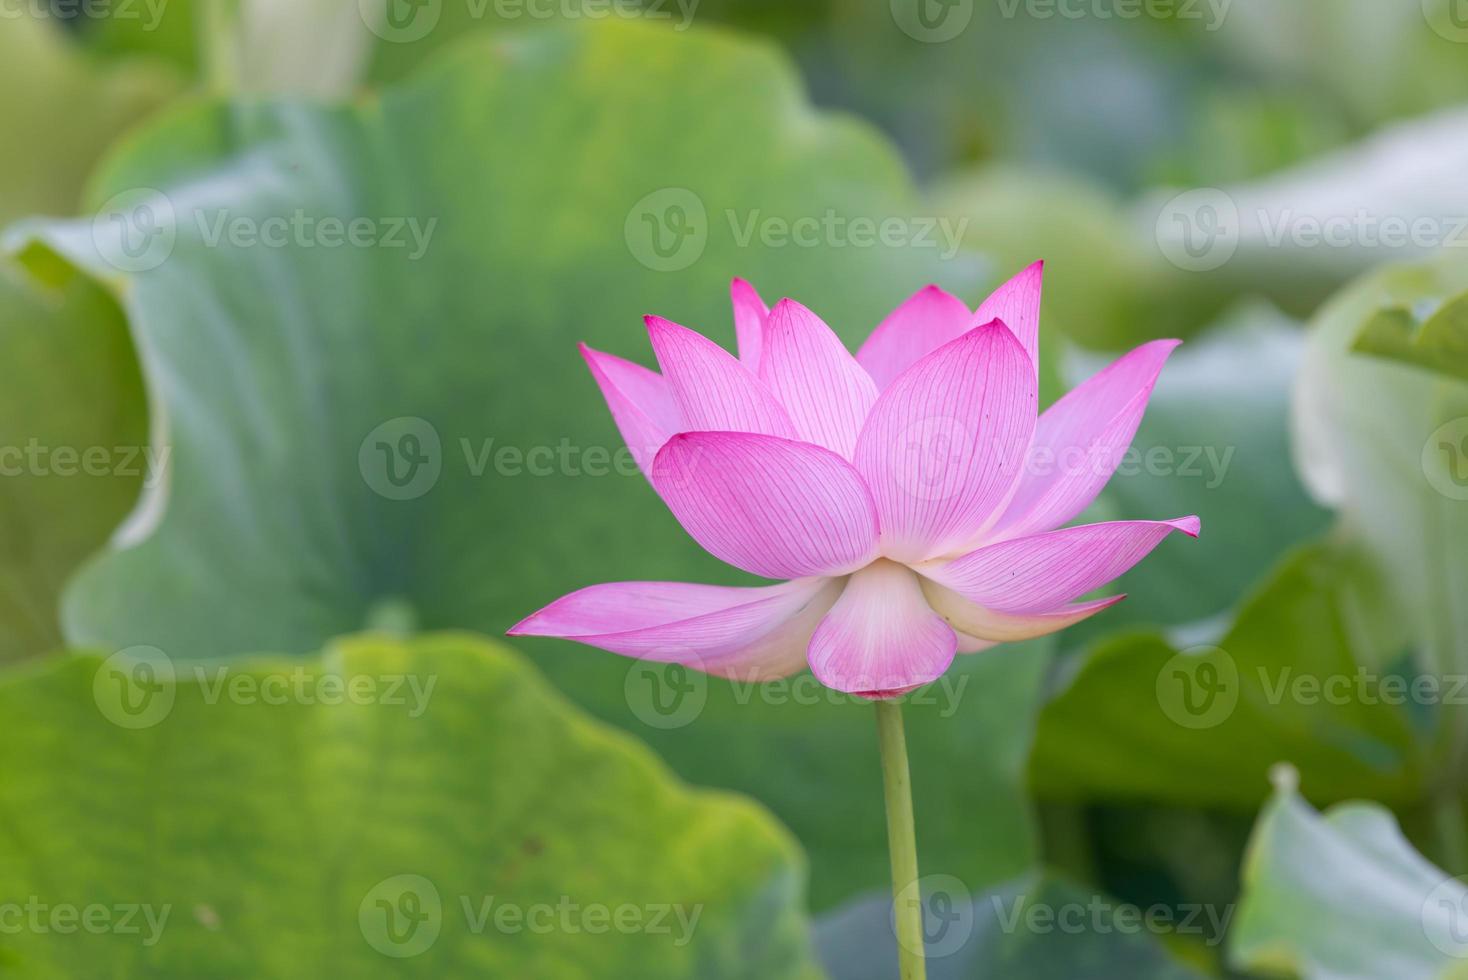 une fleur de lotus rose sur un fond de feuille de lotus vert photo